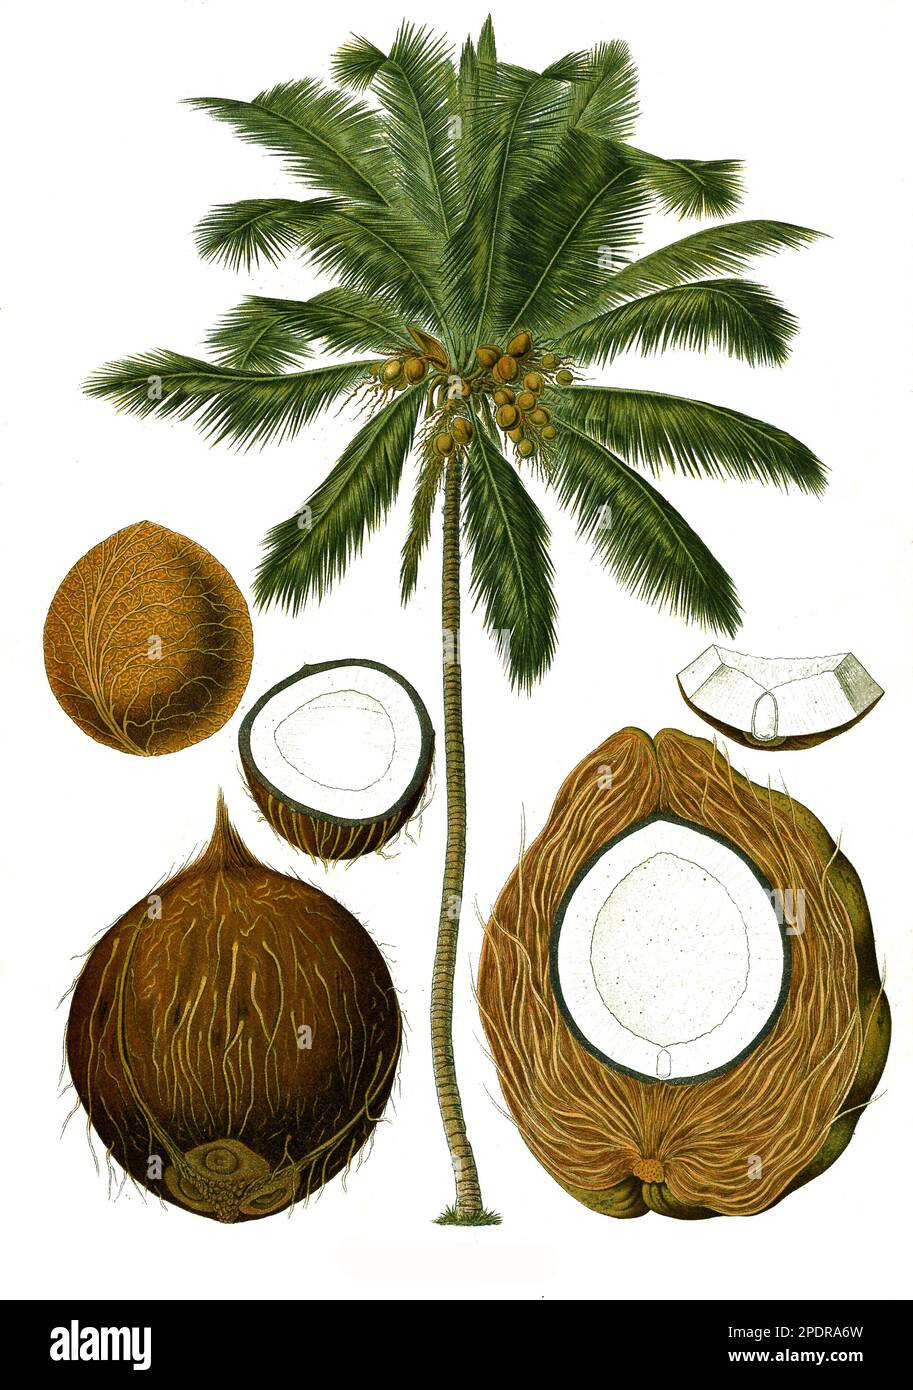 Heilpflanze, Kokospalme oder Kokosnusspalme (Cocos nucifera) ist ein tropisches Palmengewächs, an dem die Kokosnuss wächst, Historisch, digital restaurierte Reproduktion von einer Vorlage aus dem 18. Jahrhundert Banque D'Images